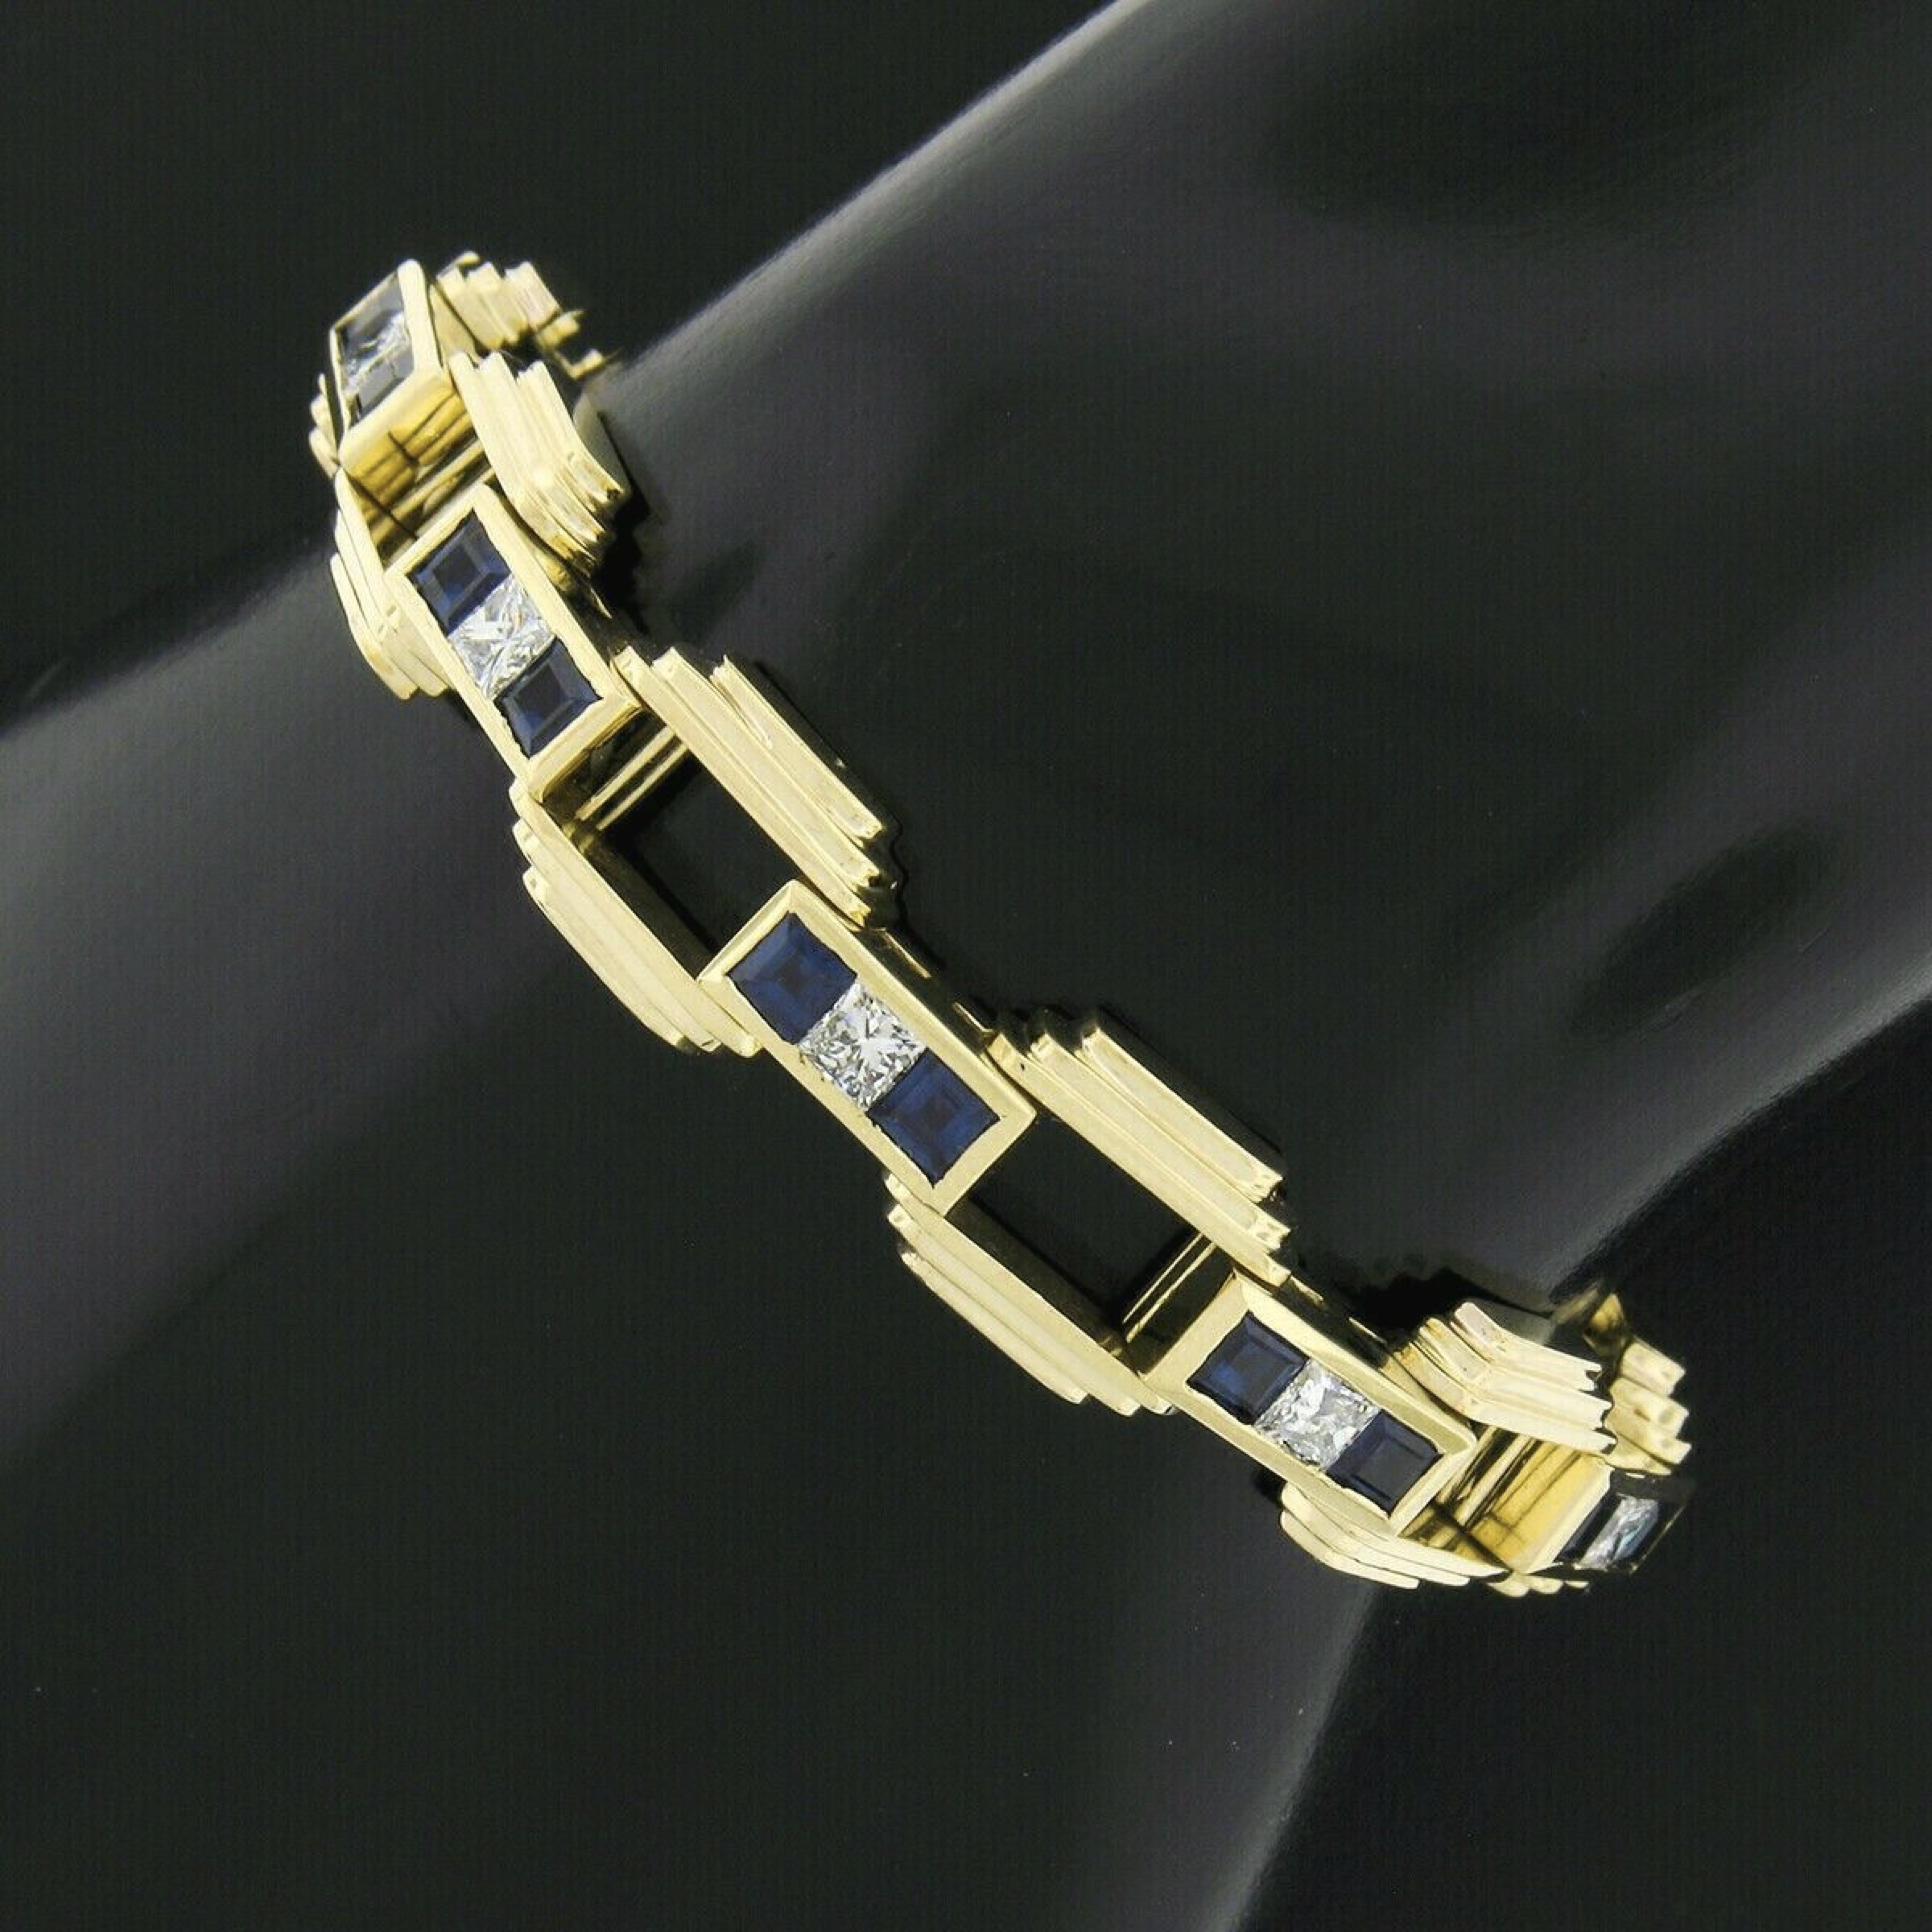 Vous regardez un bracelet vintage absolument magnifique, fabriqué en or jaune massif 18 carats, avec d'élégants maillons ouverts en forme de pyramide, sertis en canal de saphirs et de diamants de très belle qualité. Les saphirs carrés taillés en